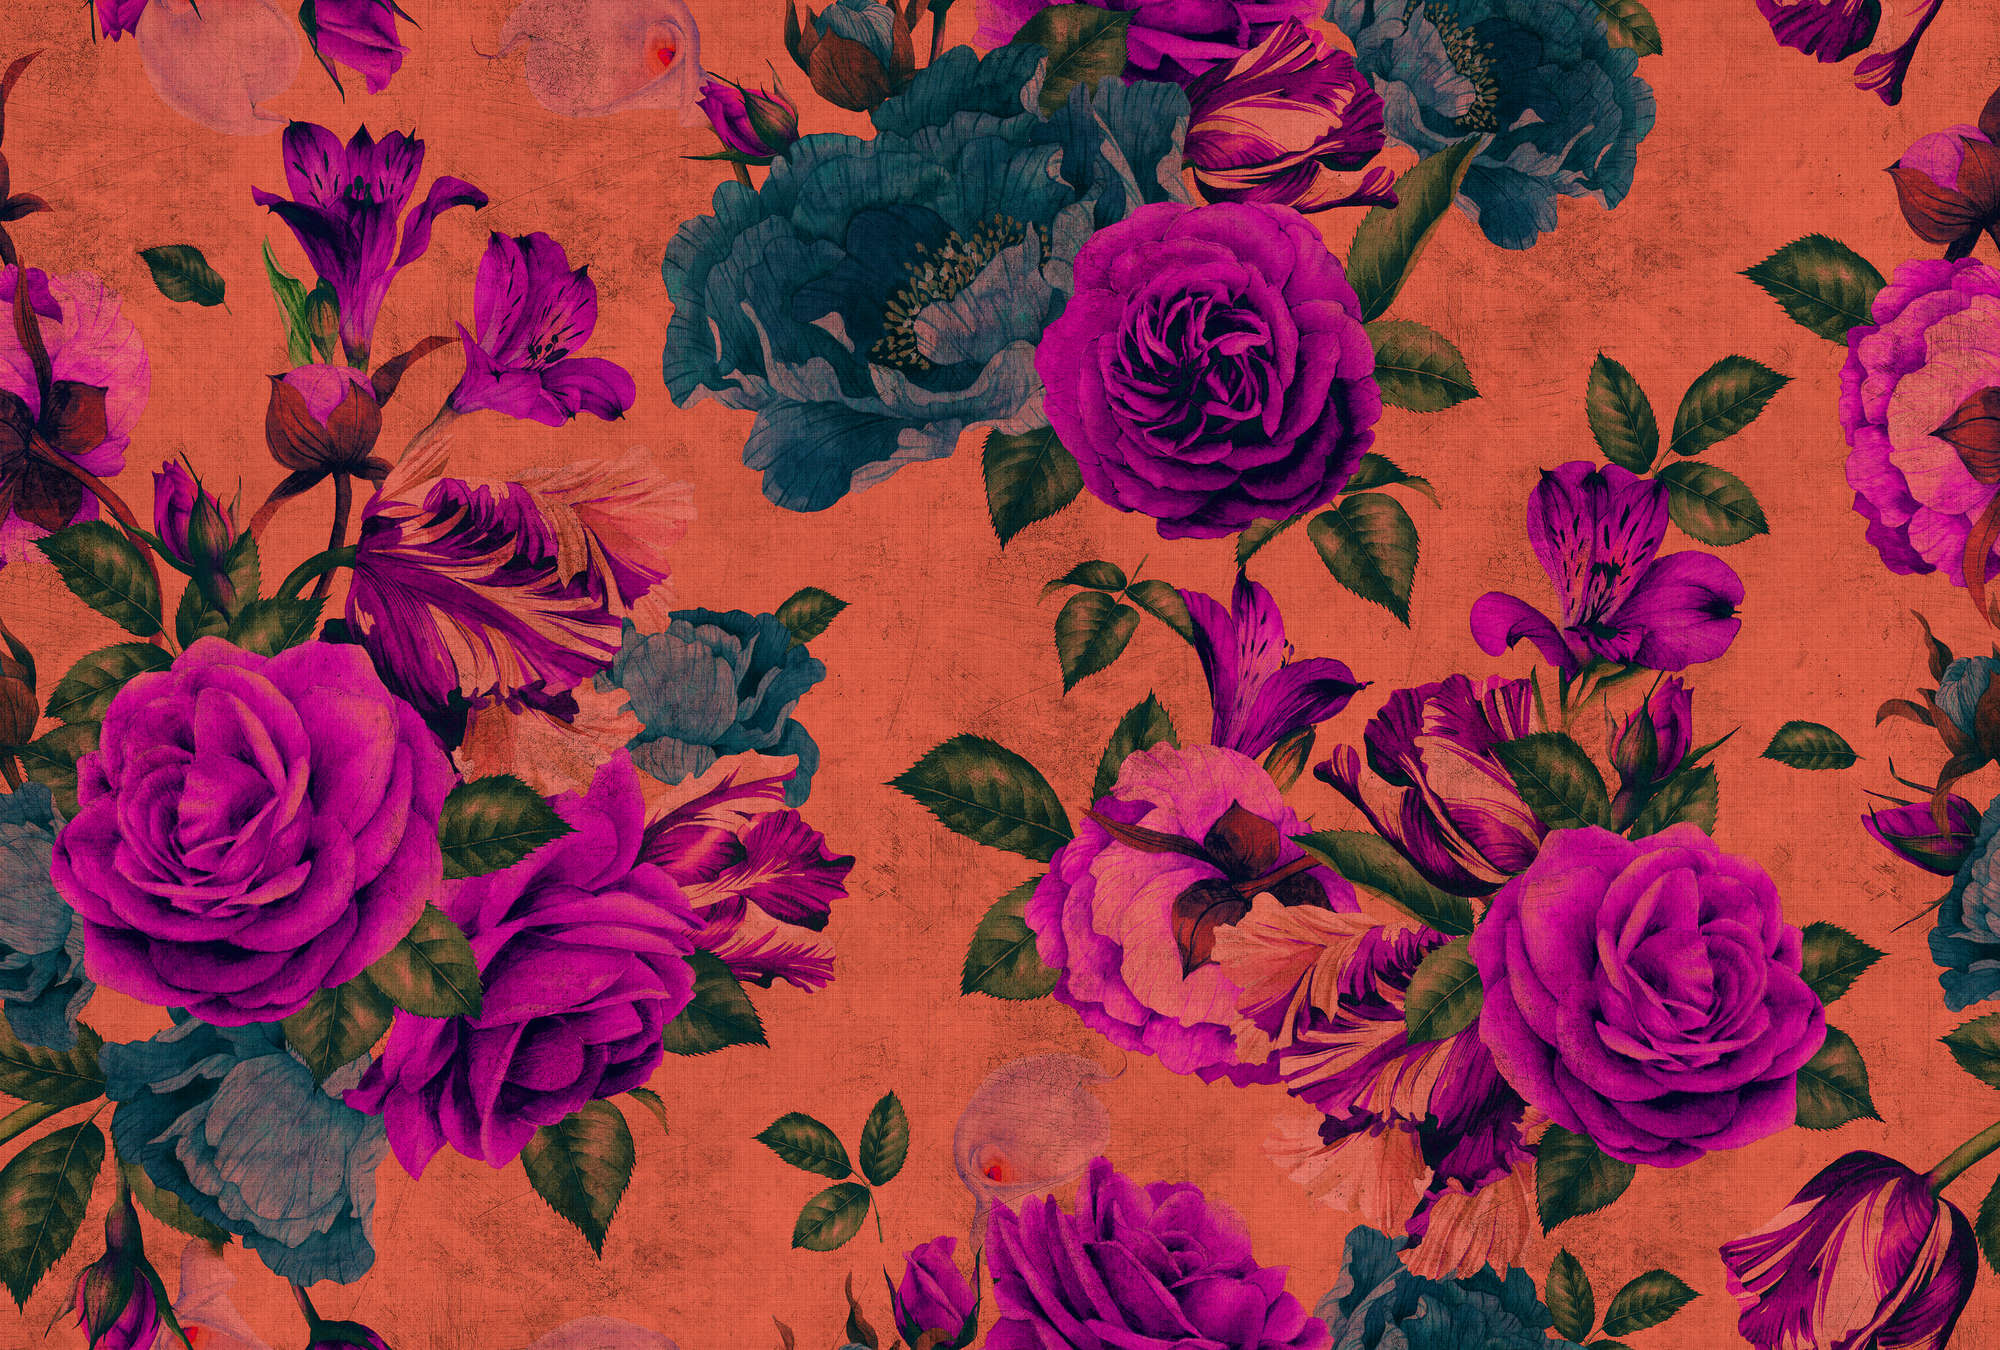             Spanish rose 2 - Papel pintado Rosa en flor, estructura natural con colores vivos - Naranja, Violeta | Vellón liso Premium
        